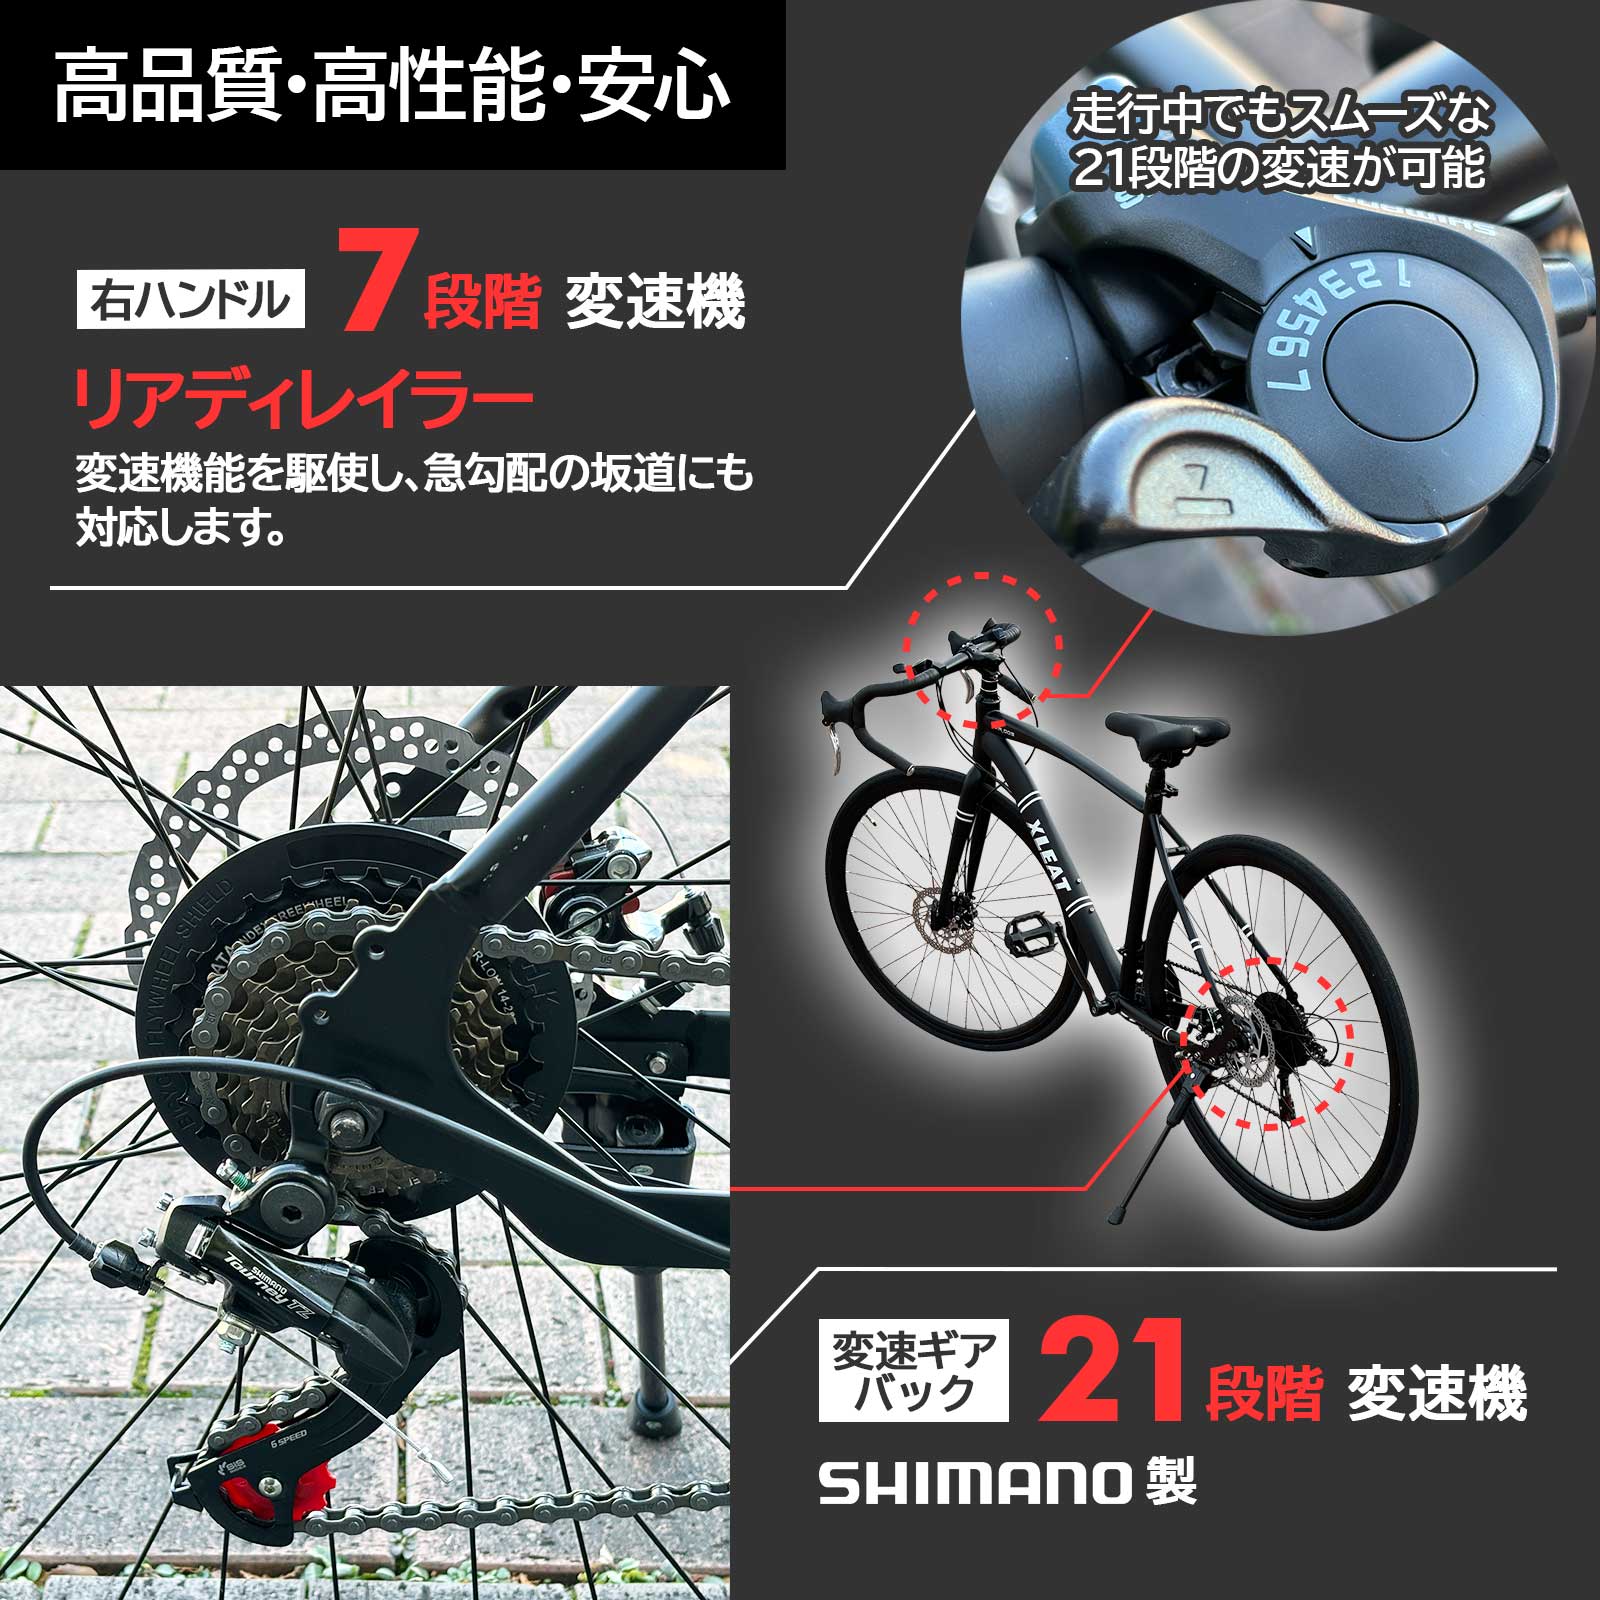 ロードバイク 700c シマノ製 21段変速 ライト スタンド付 自転車